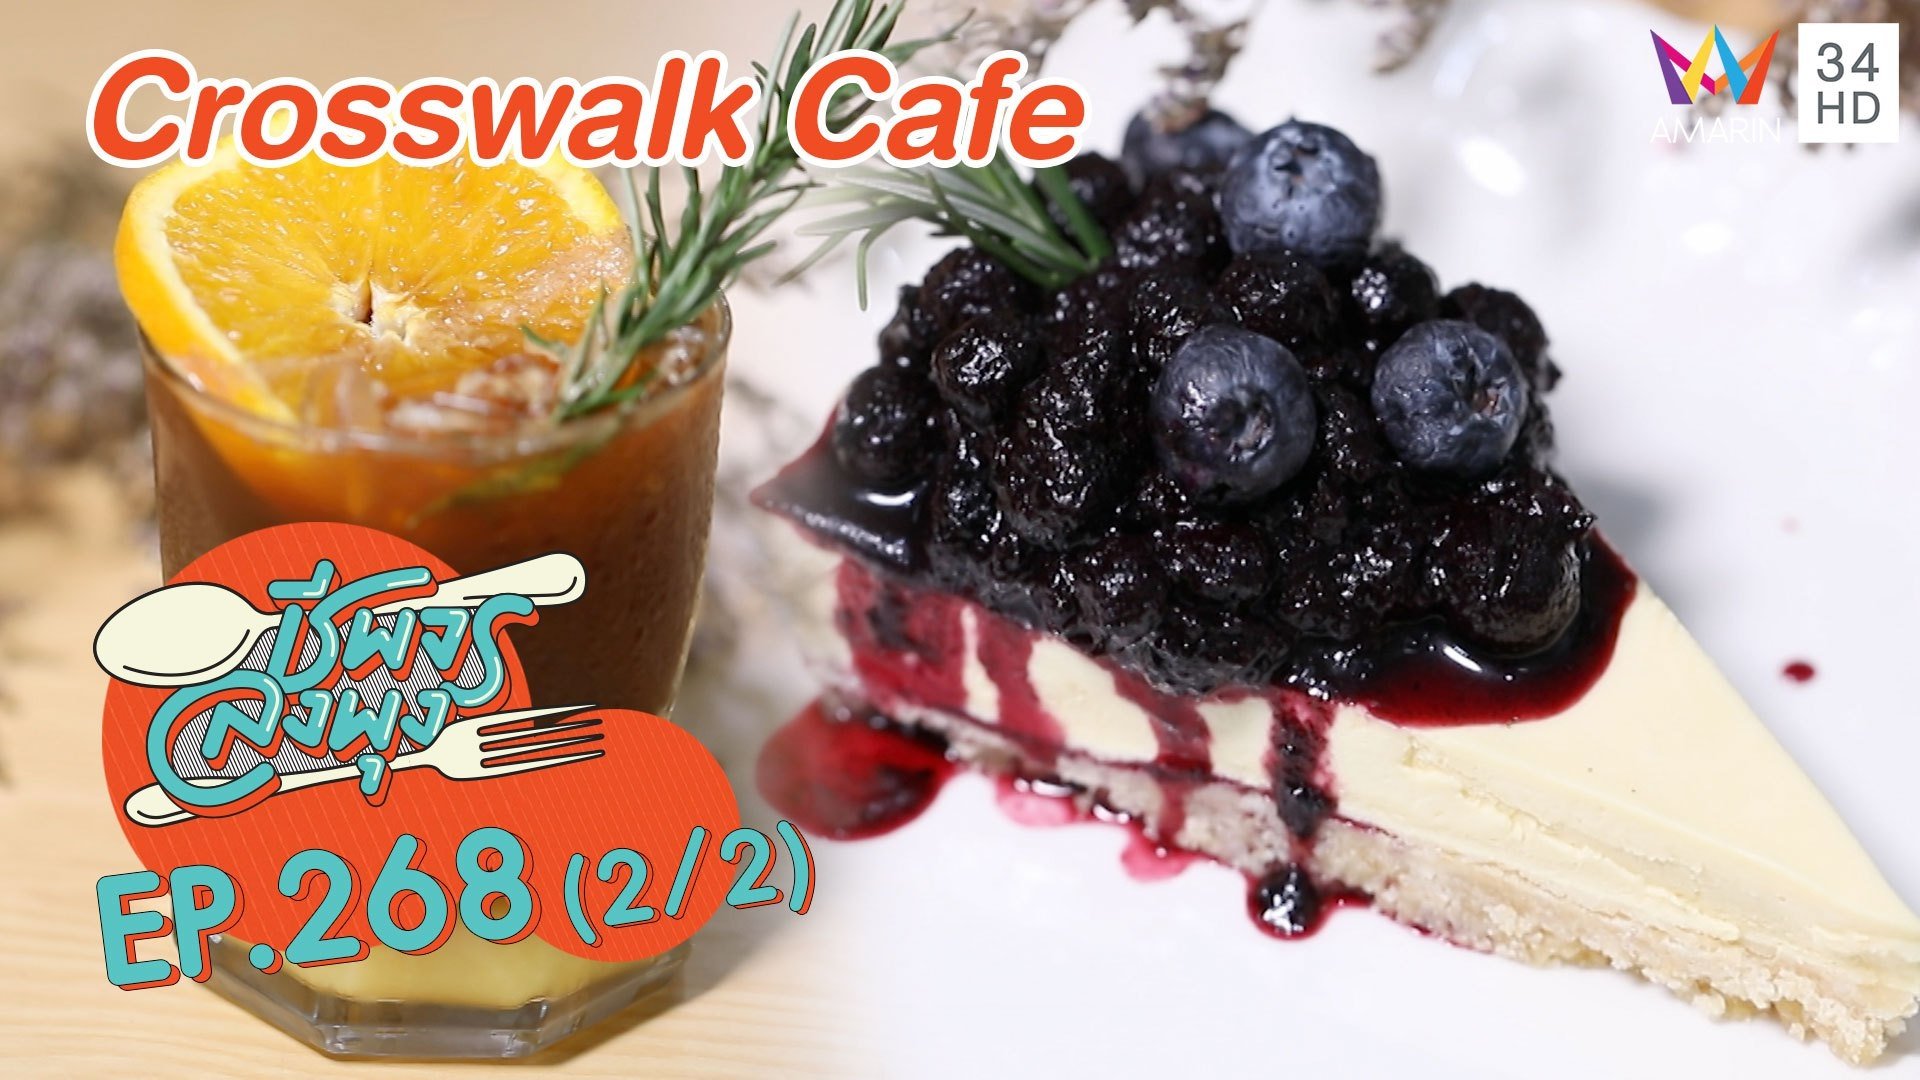 ร้านน่ารักอาหารไม่ธรรมดา Crosswalk Cafe  | ชีพจรลงพุง | 16 ม.ค. 64 (2/2) | AMARIN TVHD34